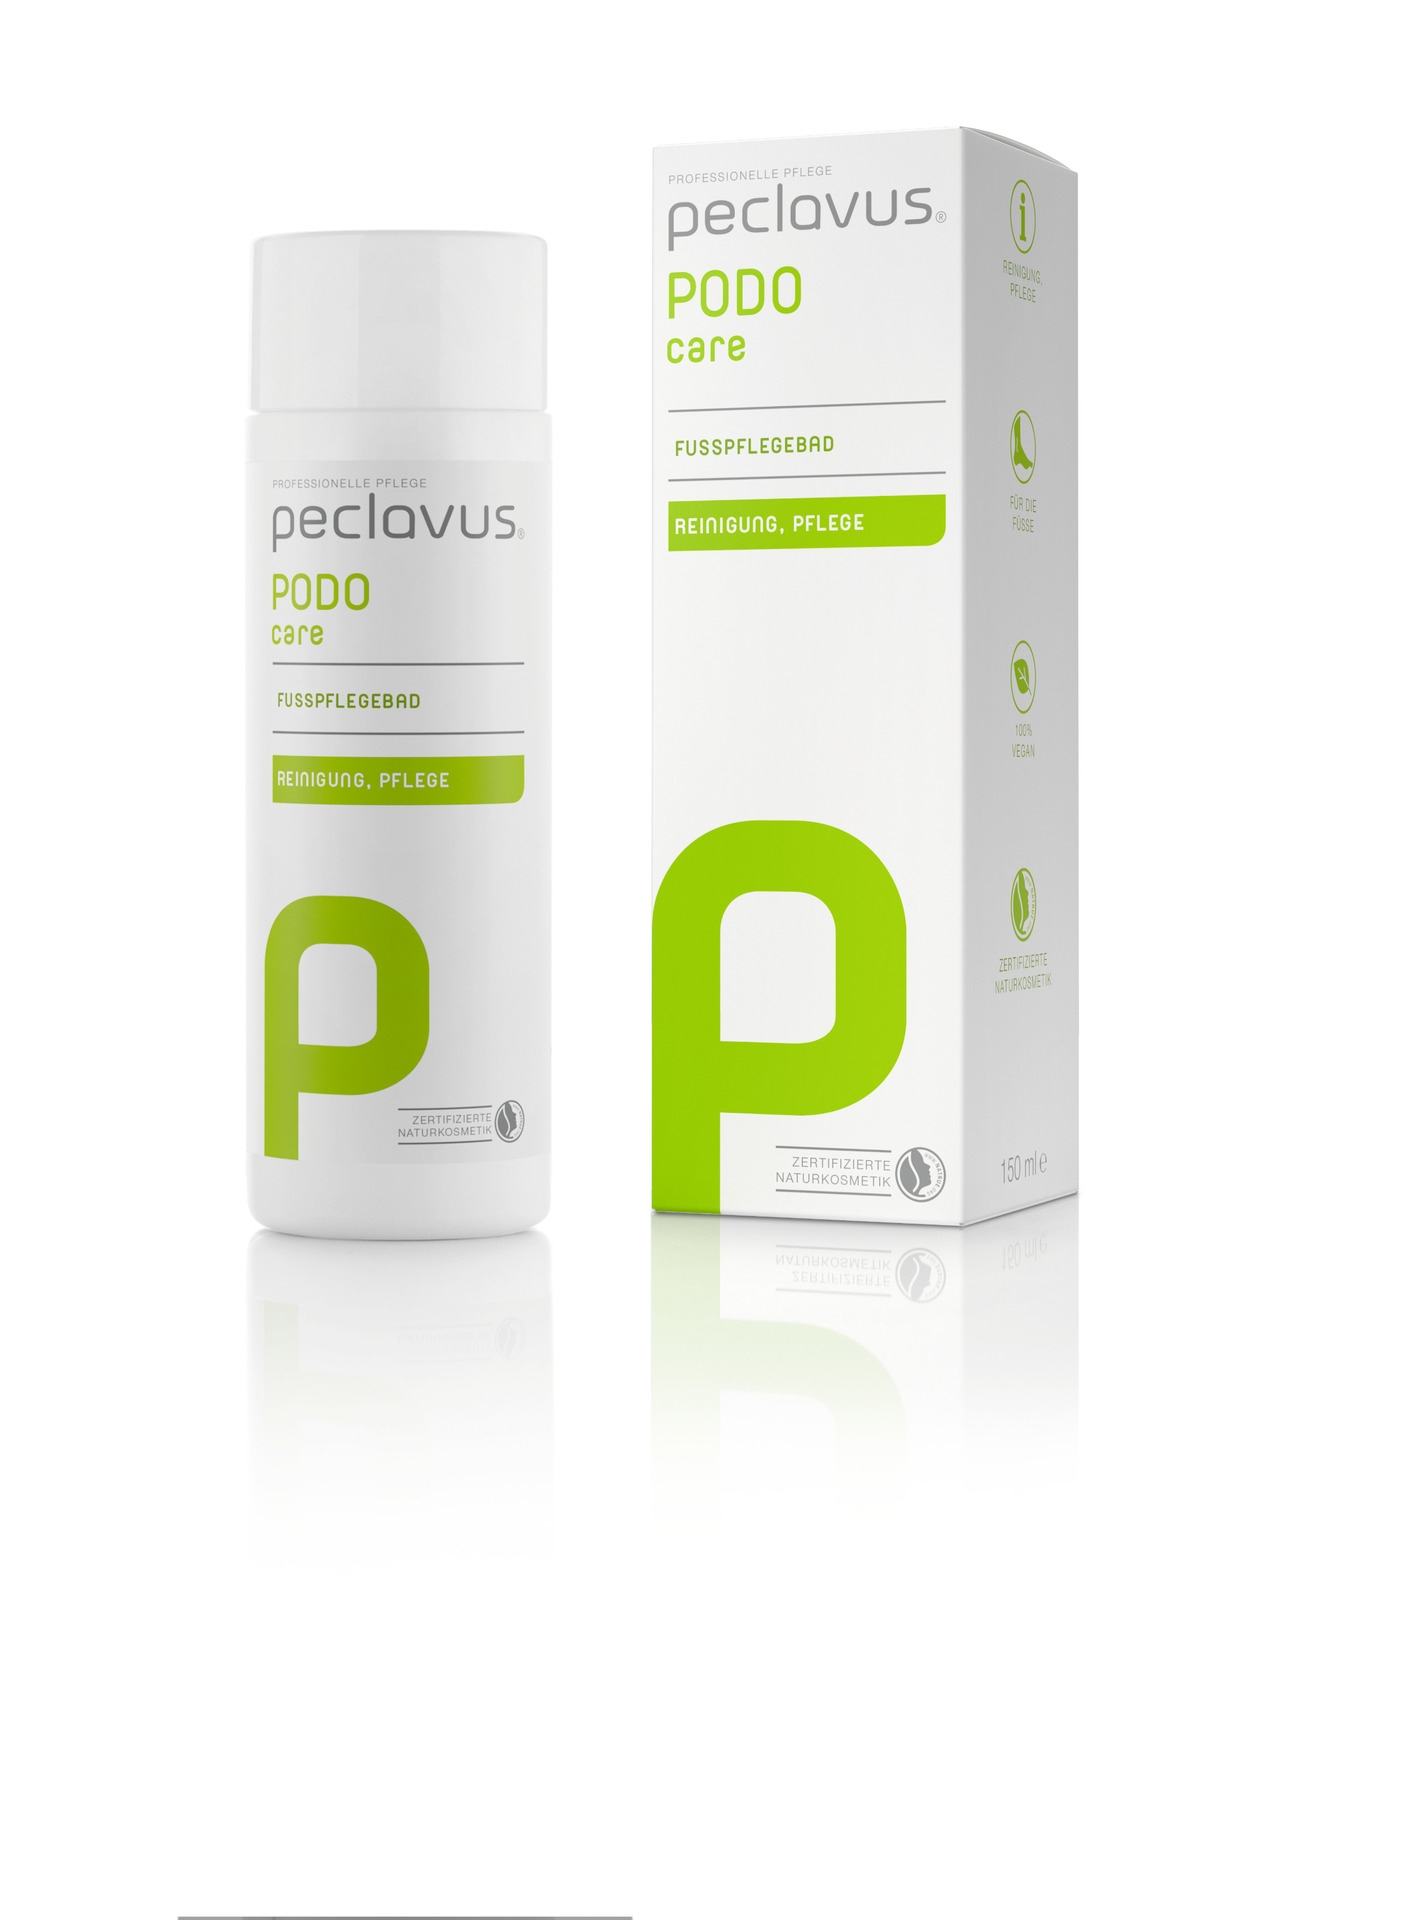 Peclavus PODOcare Fußpflegebad | 150 ml